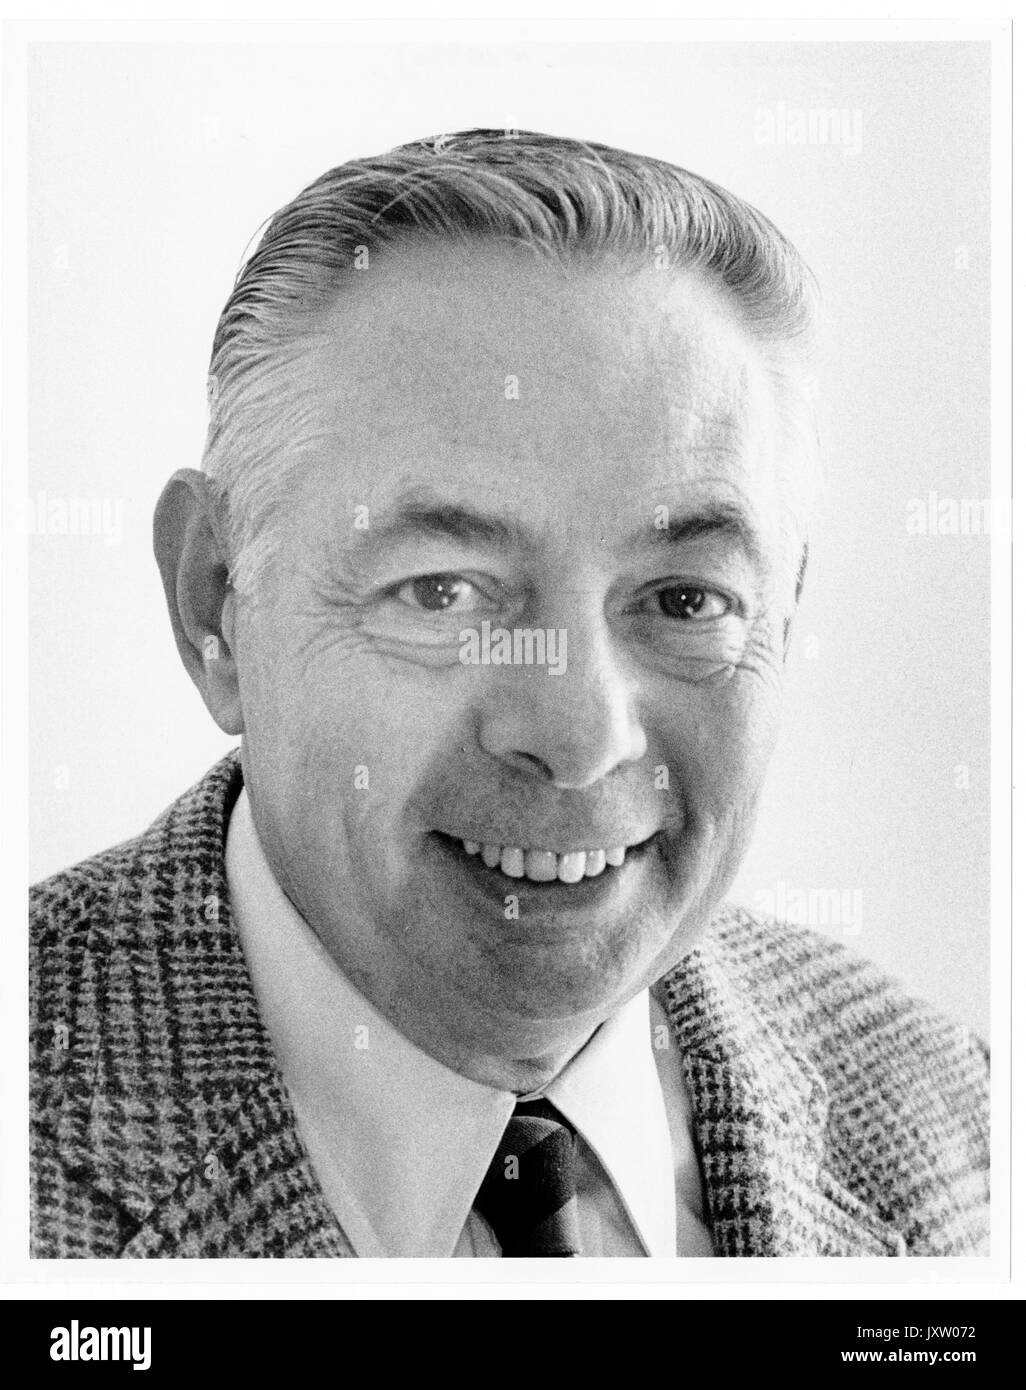 Donald g bickert, portrait Fotografie, Schultern, Gesicht, c 55 Jahre, 1985. Stockfoto